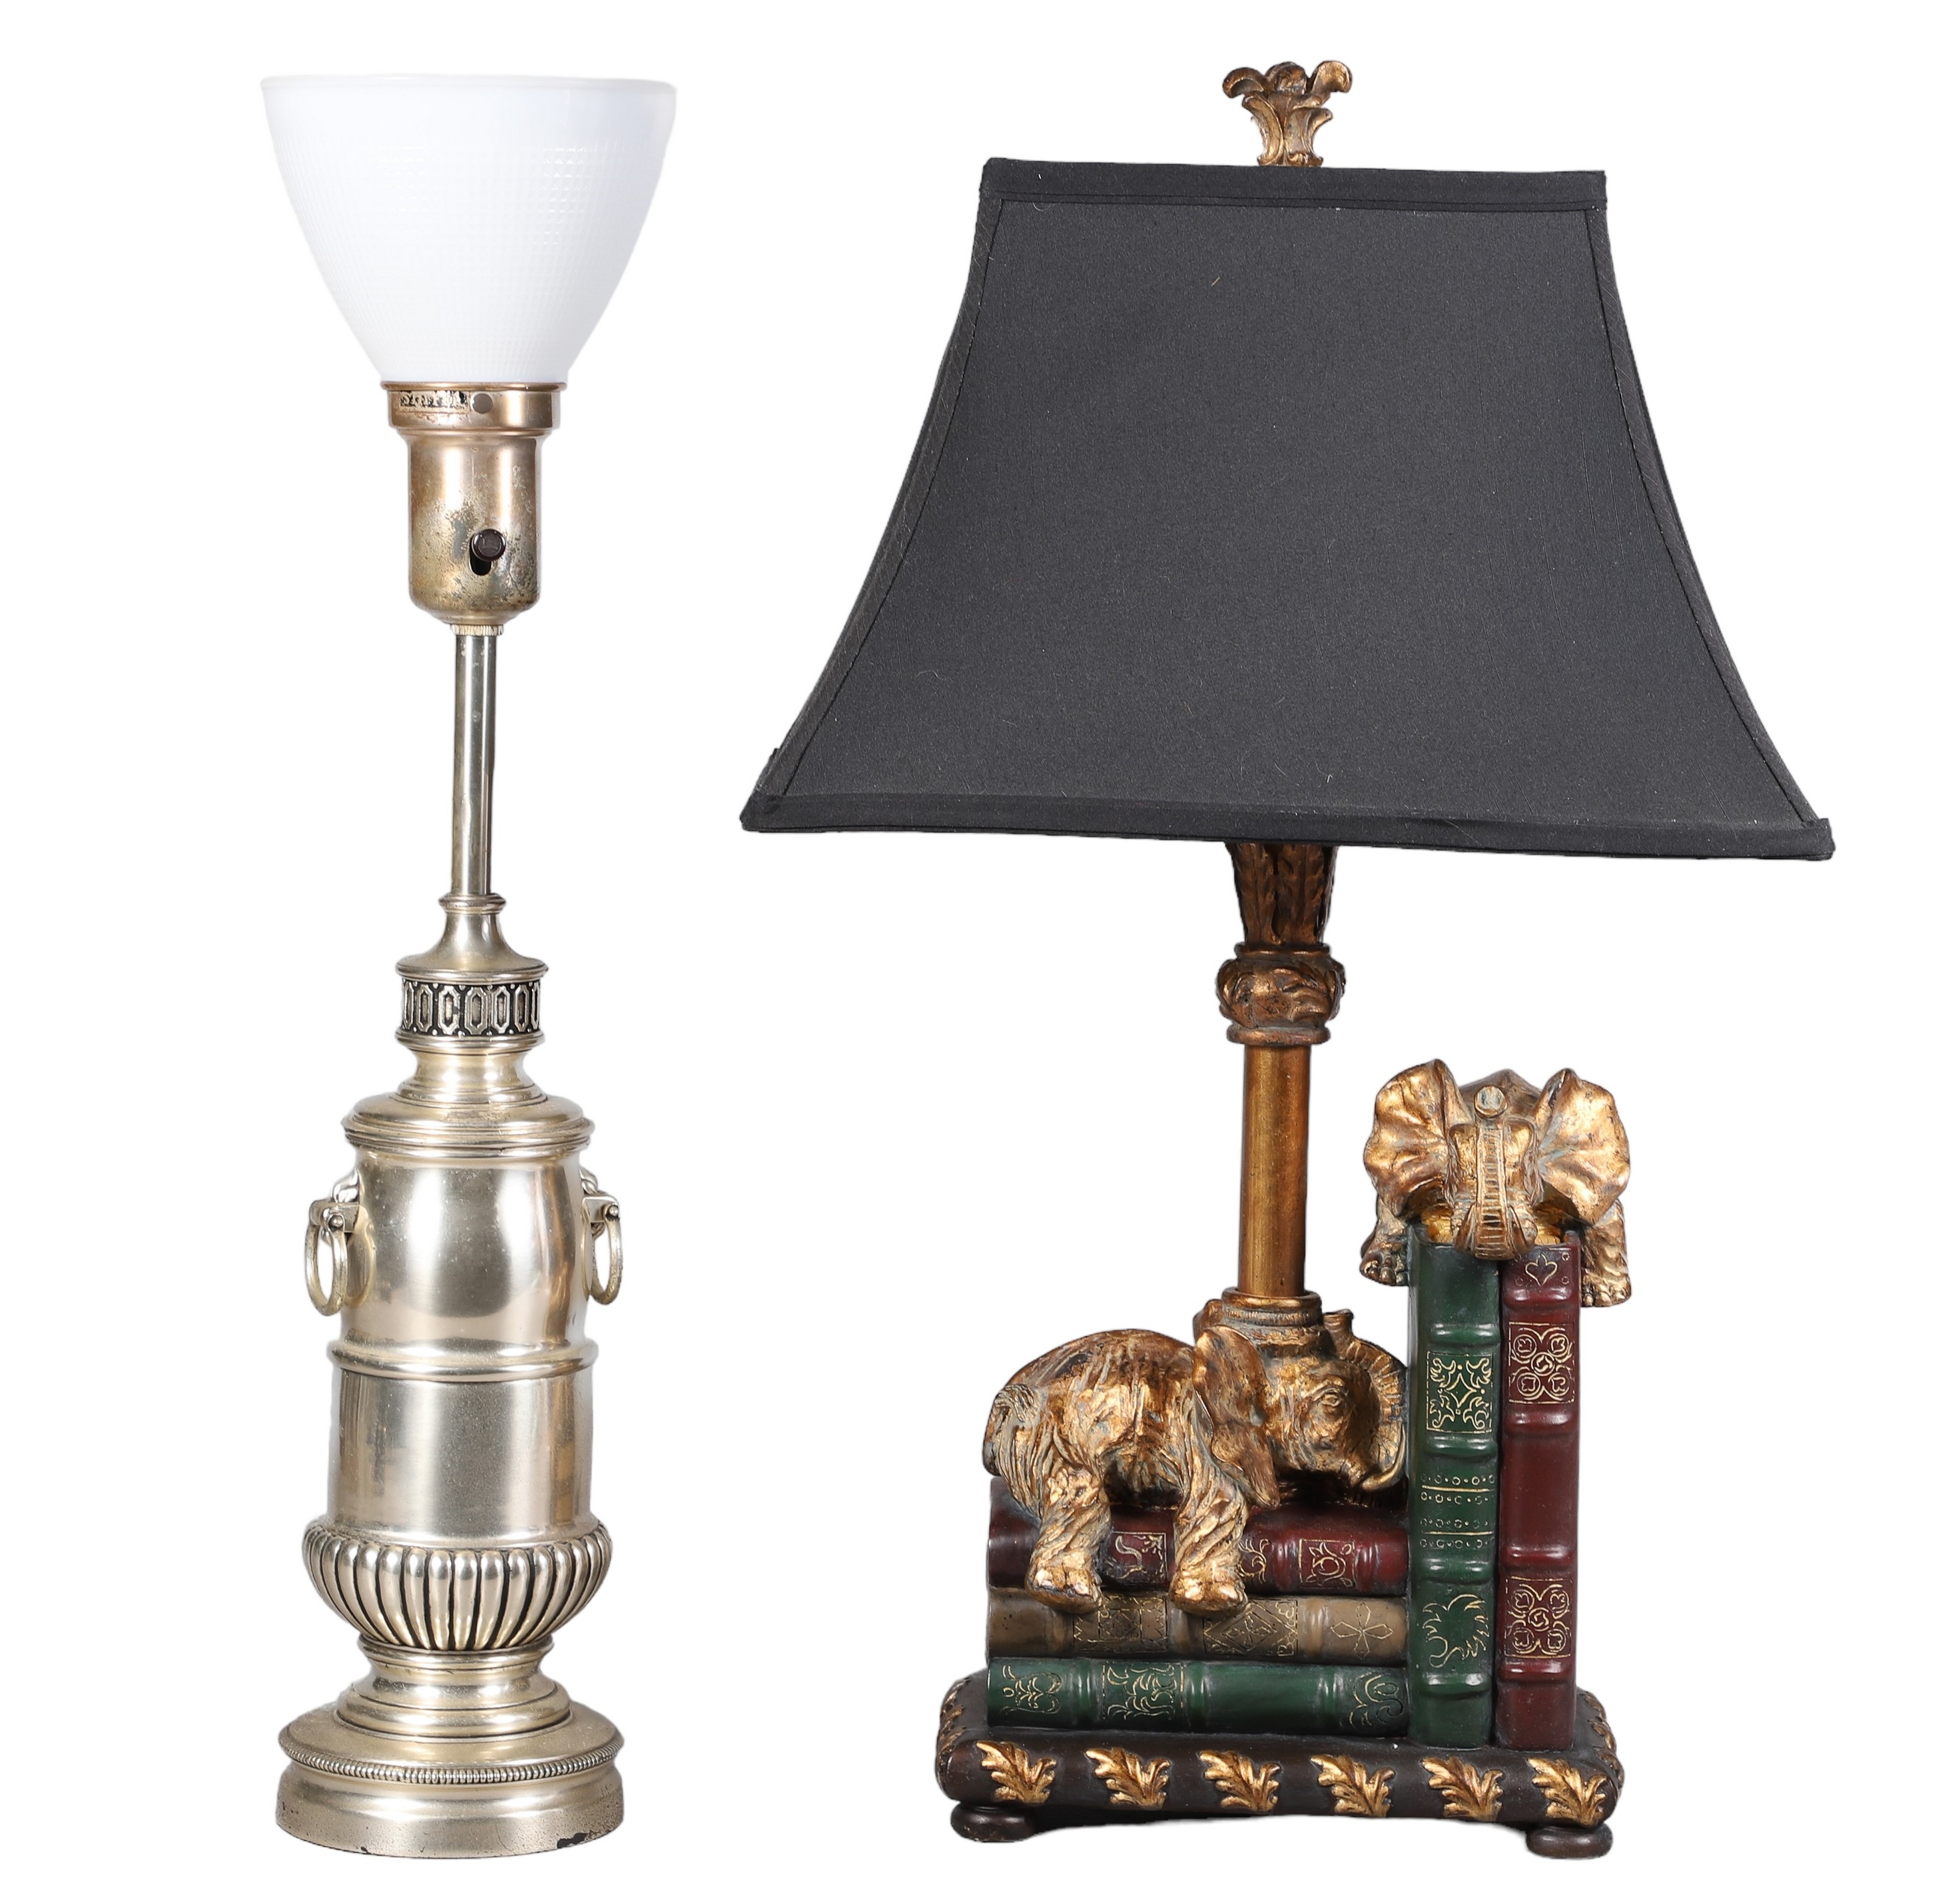  2 Decorative table lamps c o 2e1196